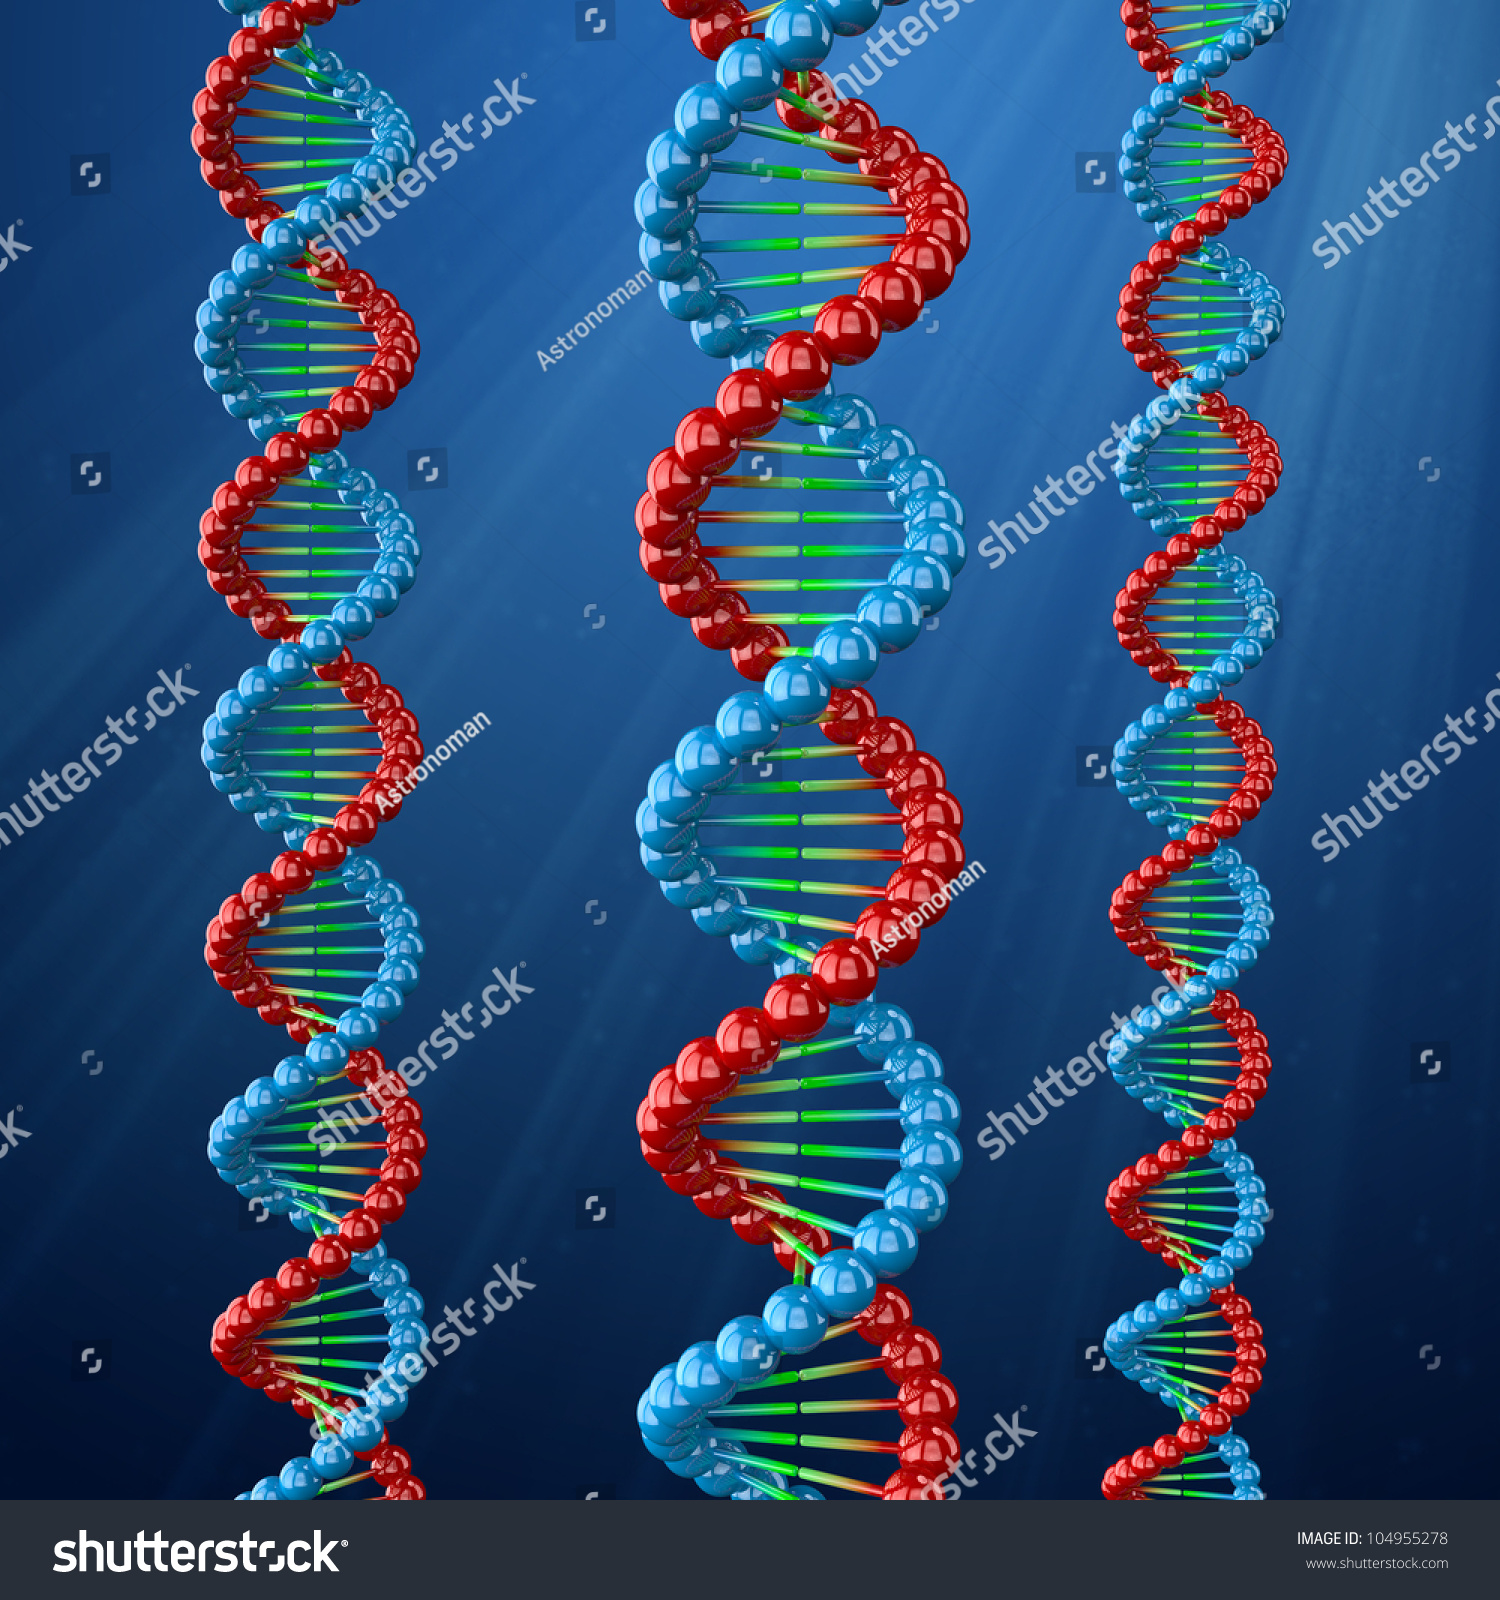 Dna Helix Genetic Engineering Scientific Concept Stock Photo Shutterstock